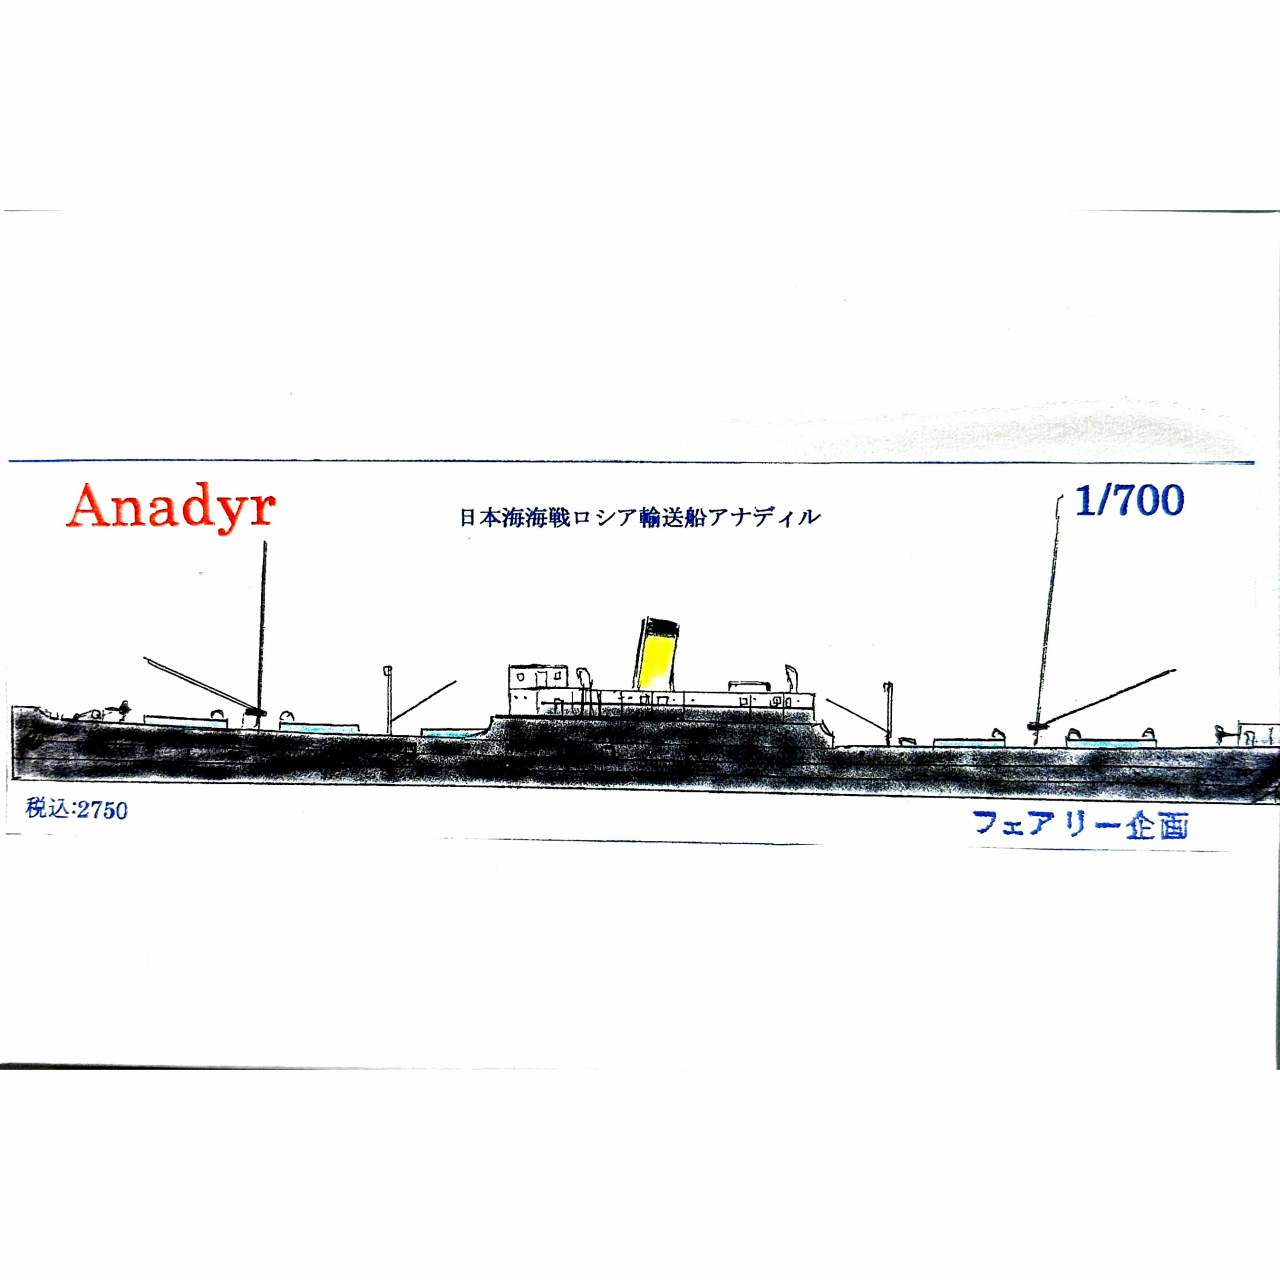 【新製品】200 日本海海戦 ロシア輸送船 アナディル